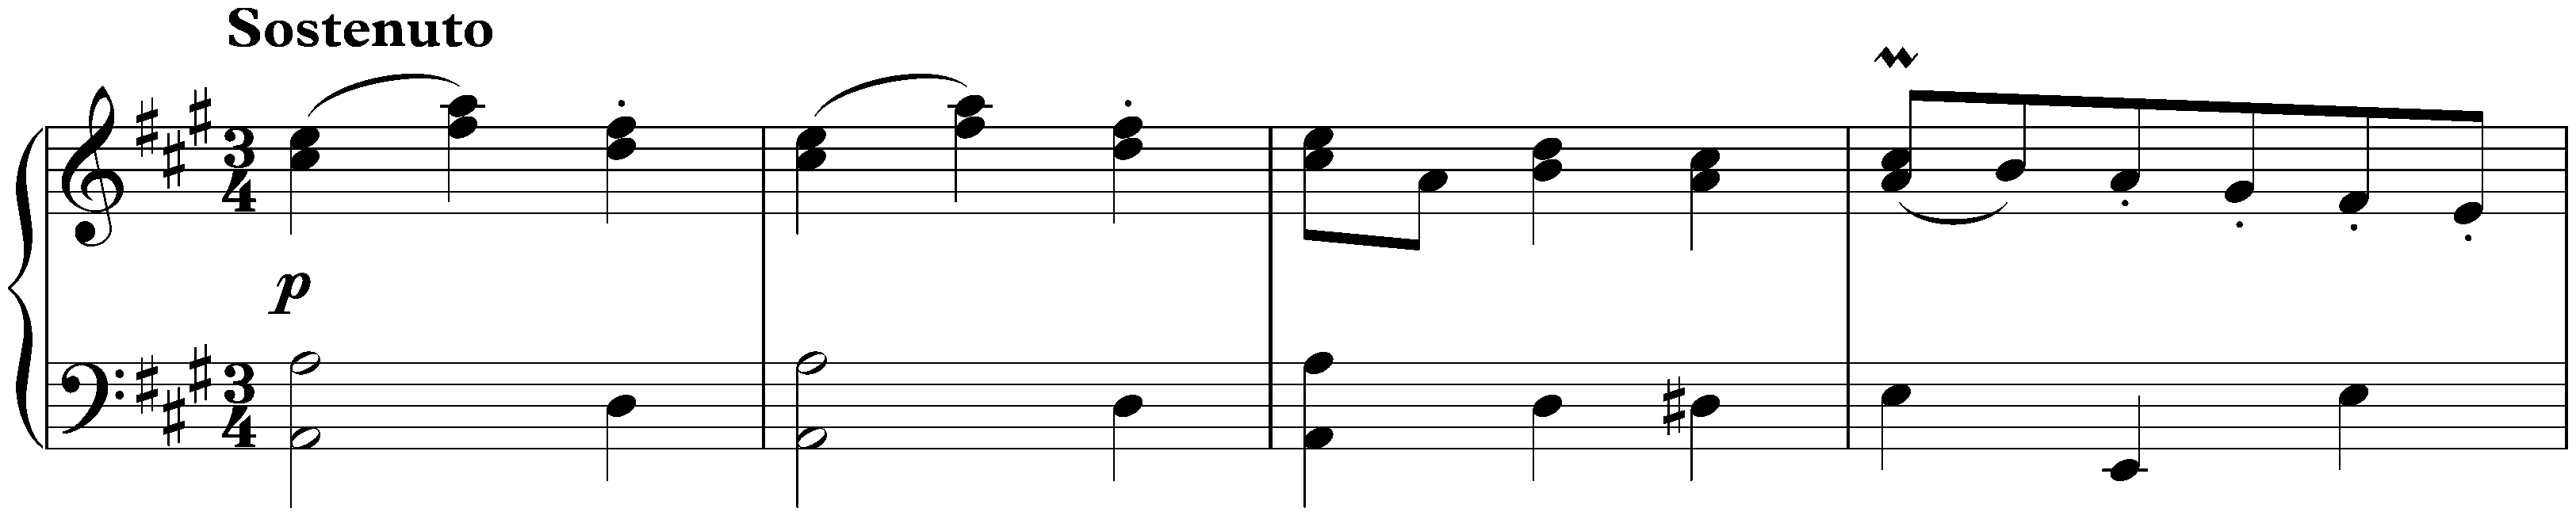 Sonata in D major, WoO 47 no. 3; 2. Menuetto: Sostenuto